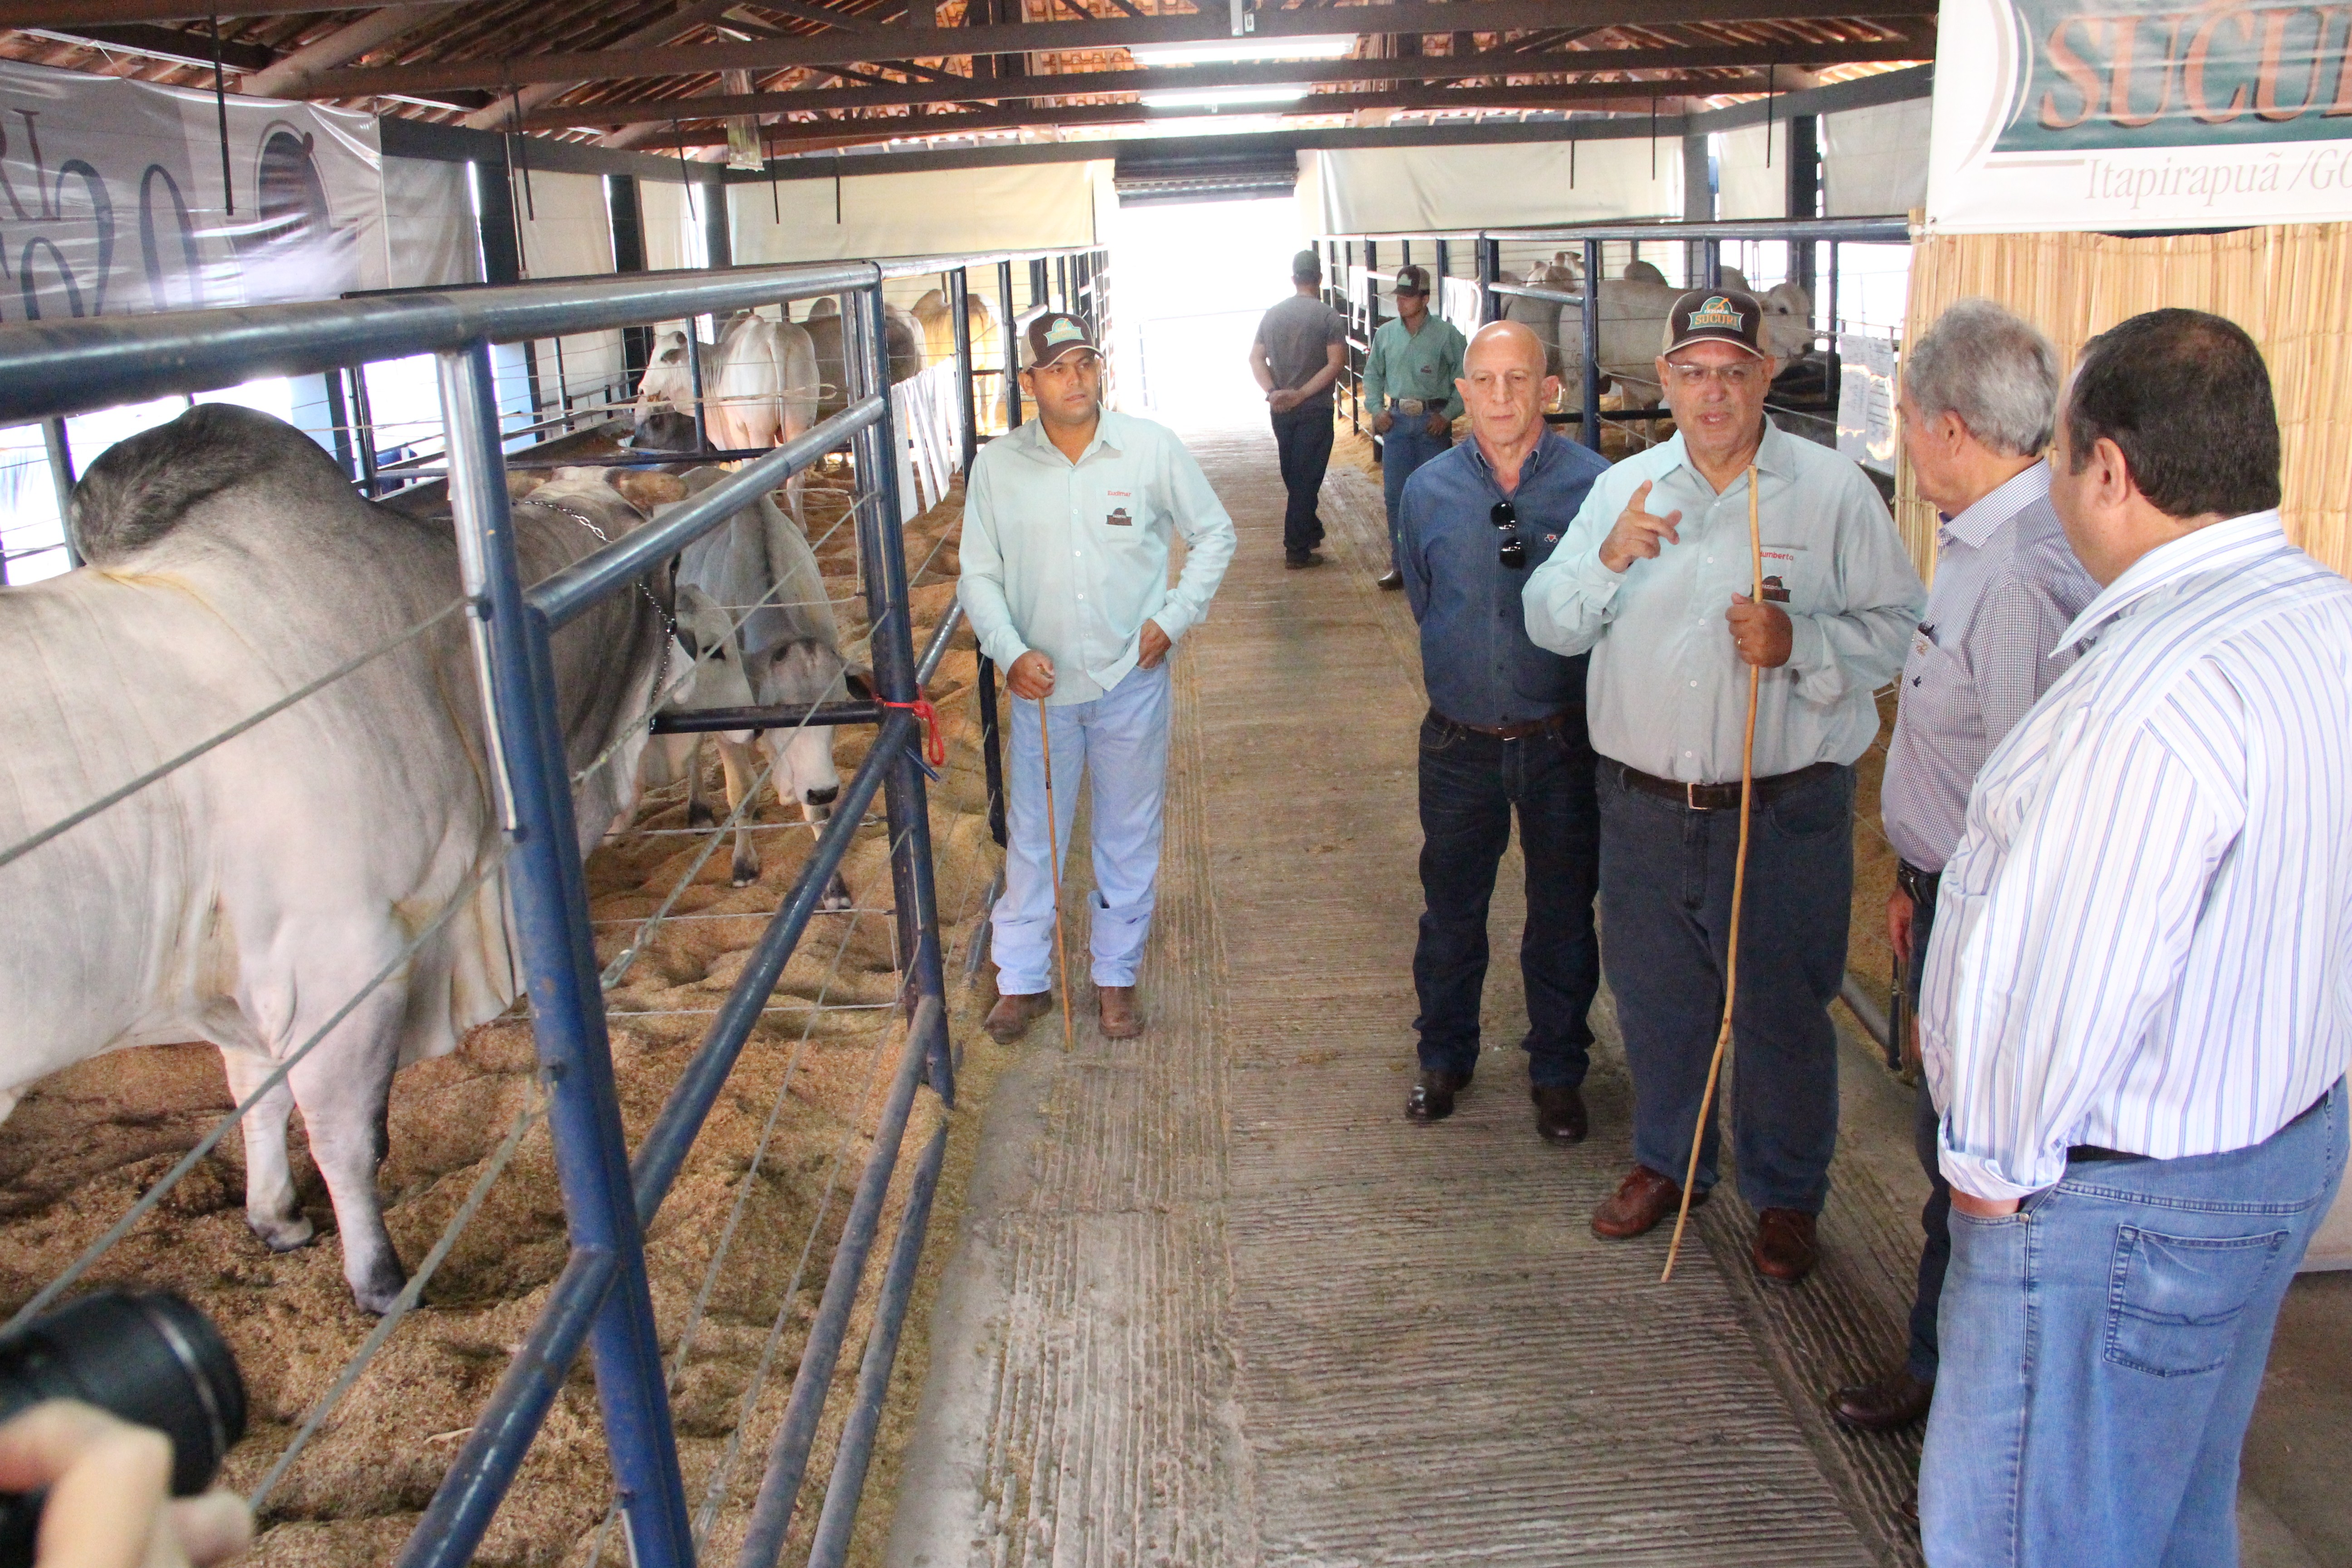  Diretores da ABCZ e produtores visitam o gado na ExpoGenética em 2018 (Foto: Cristiano Bizzinotto/Divulgação)